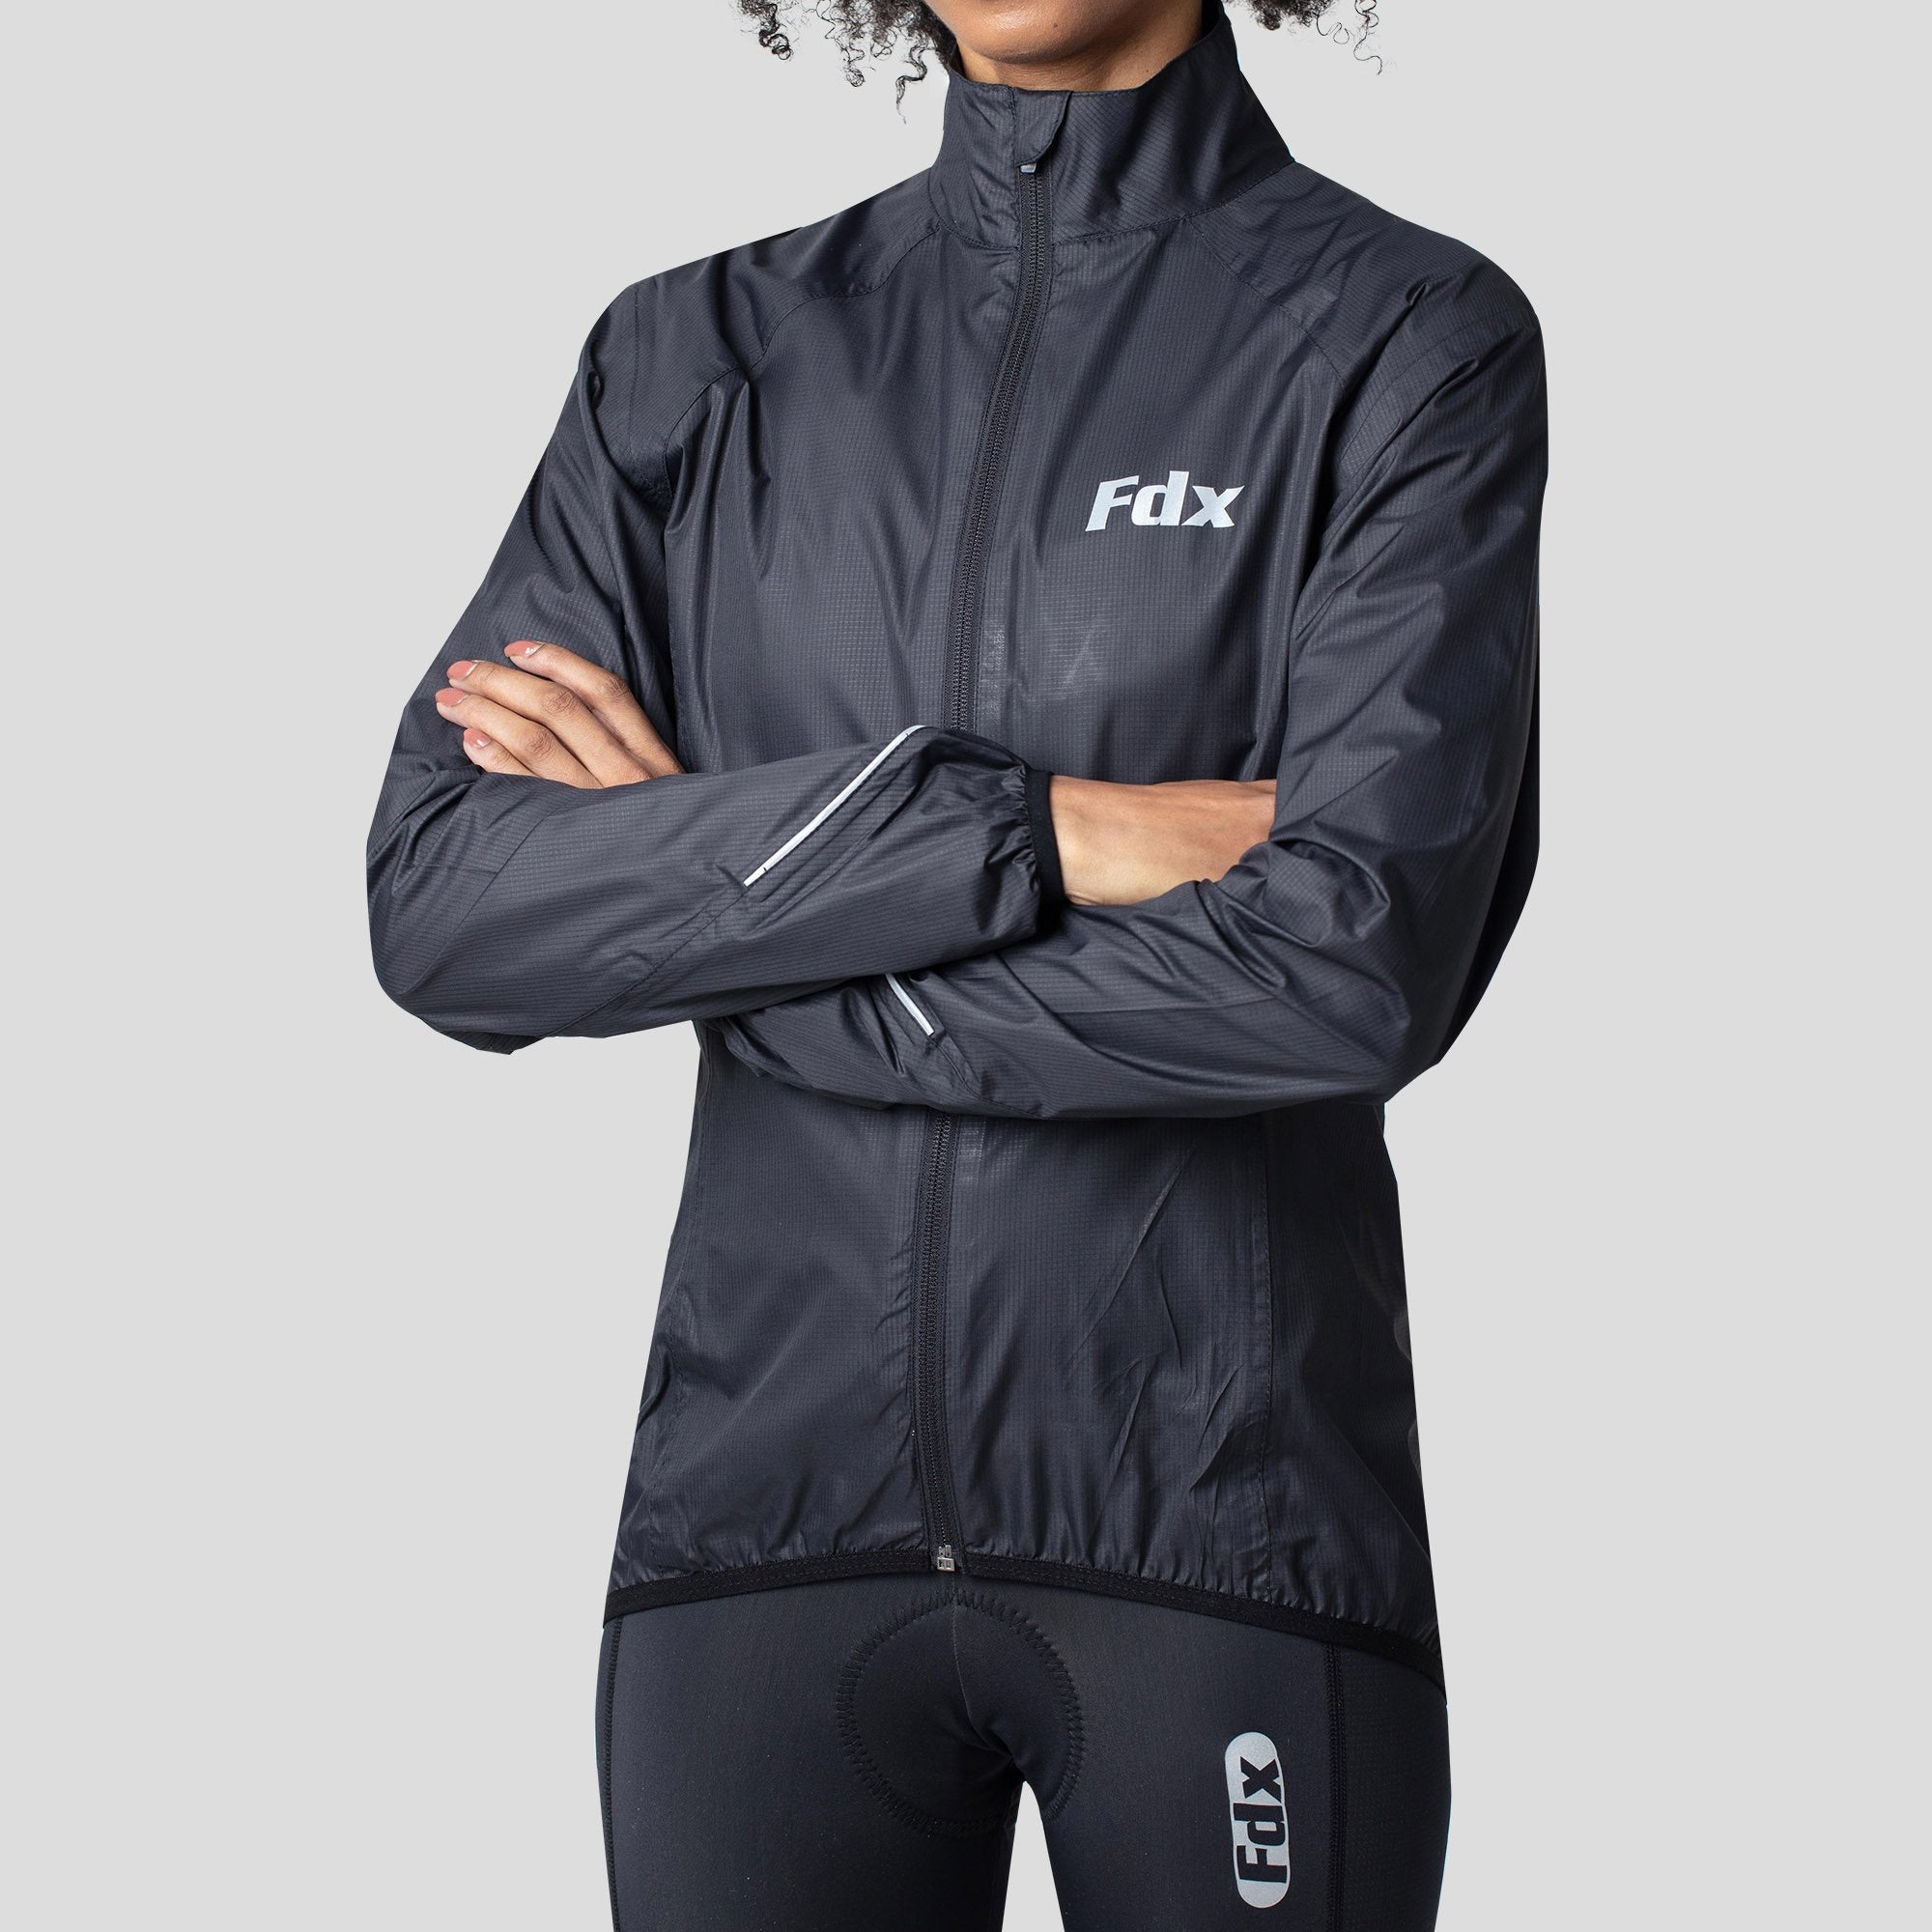 Fdx J20 Black Women's Windproof & Waterproof Cycling Jacket